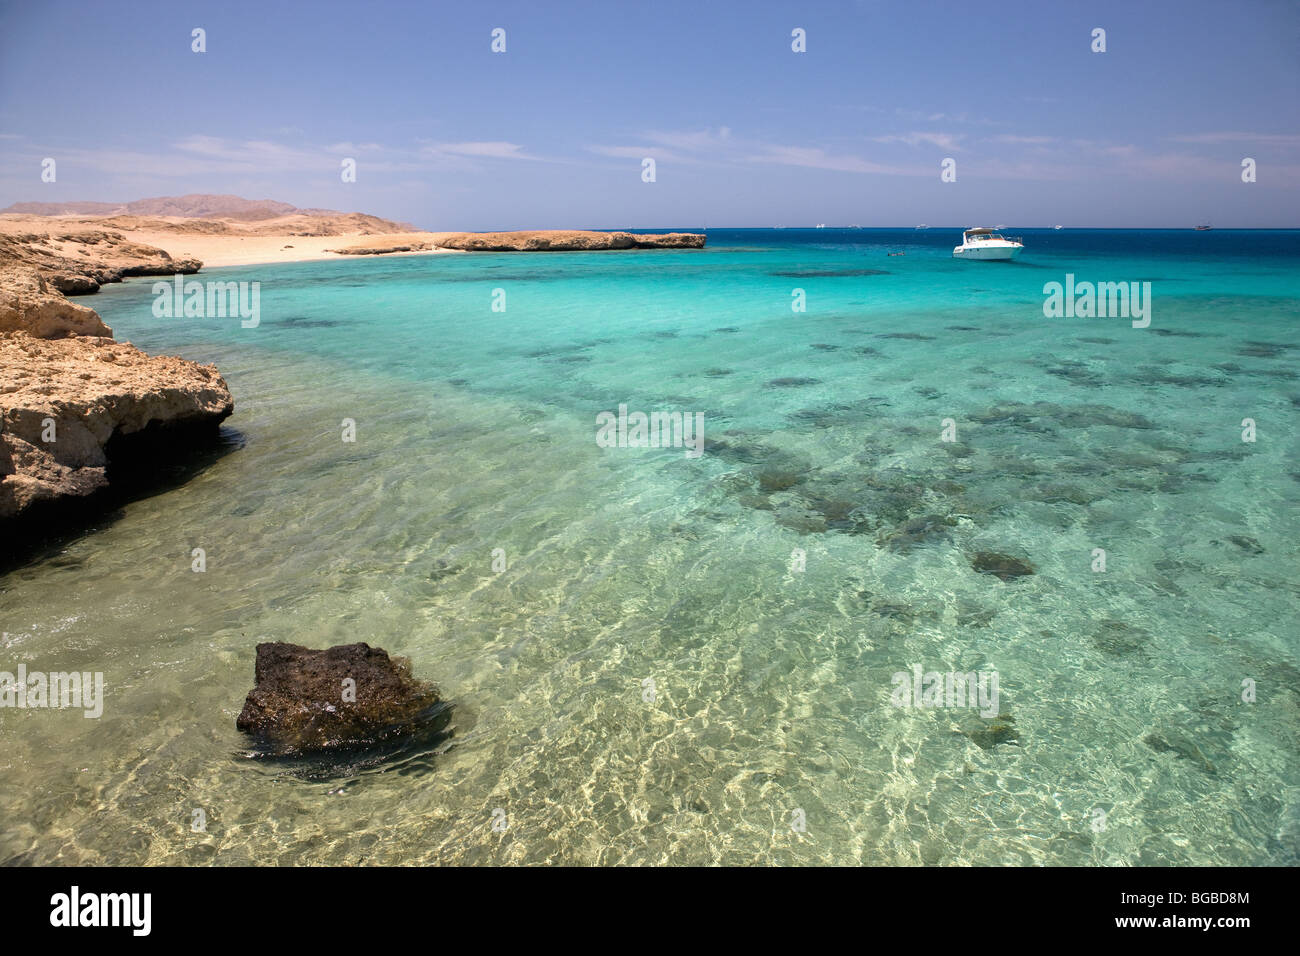 Africa, Egitto Sharm el Sheik, sull'isola di Tiran, mare, barca, costa, colori, immersioni, diving, Coral reef, snorkeling Foto Stock